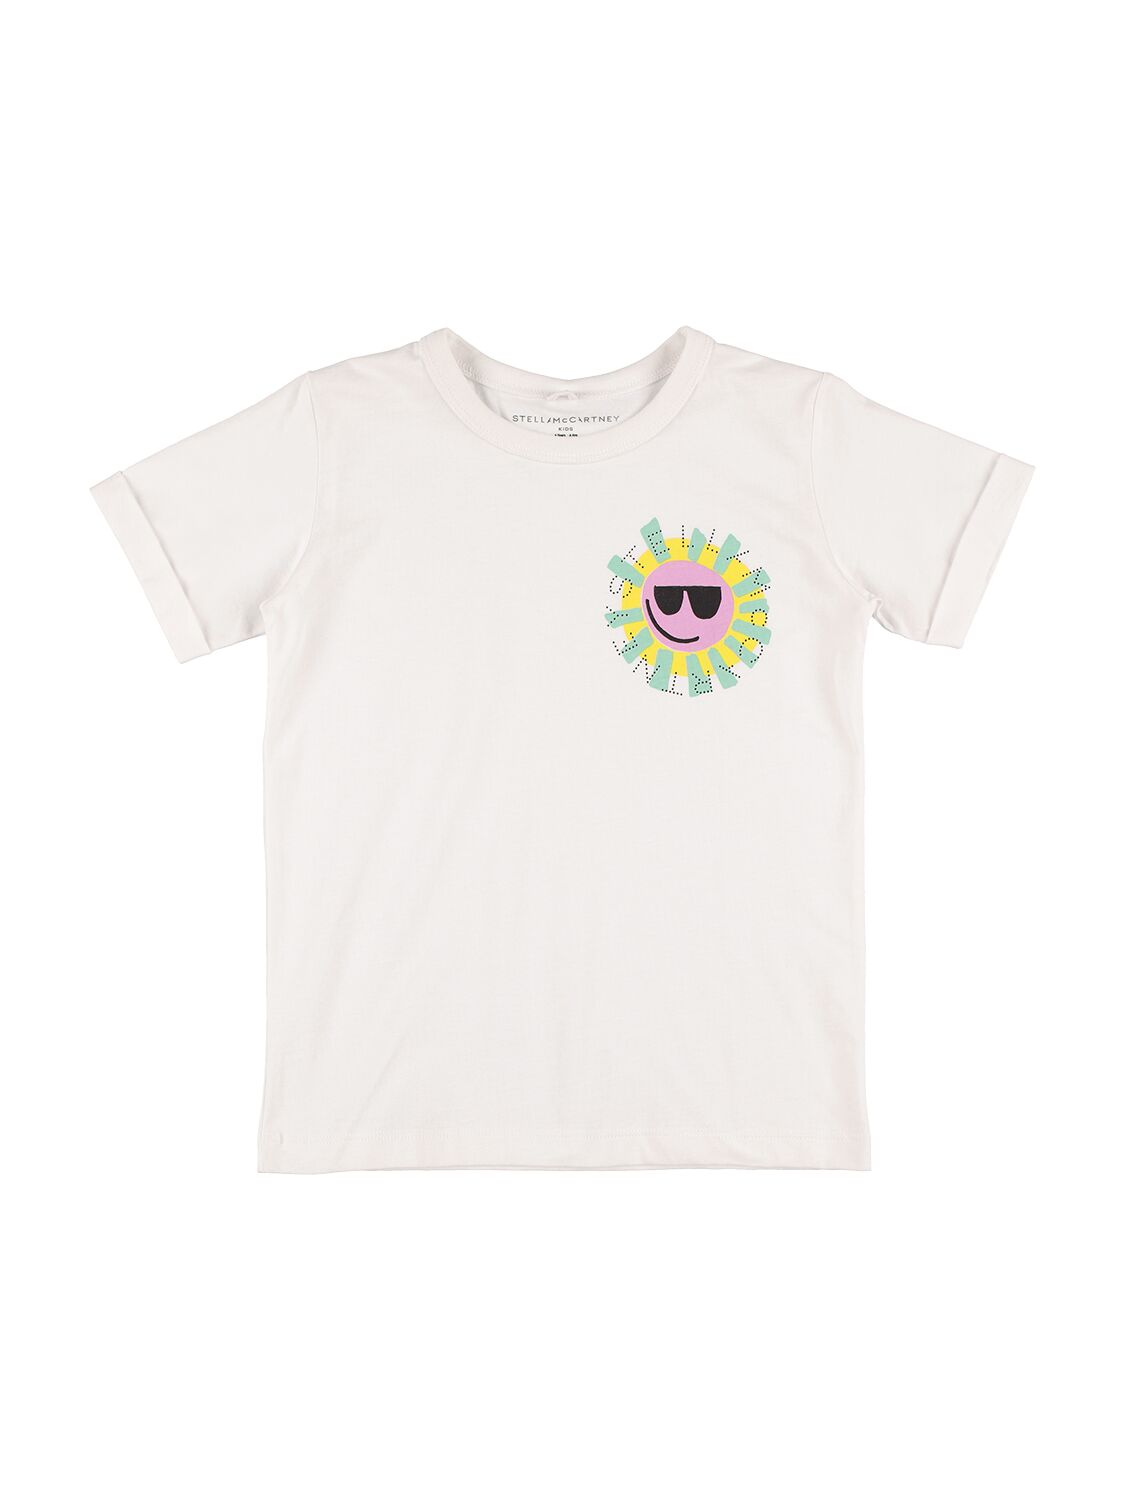 Stella Mccartney Kids' Organic Cotton Printed Logo T-shirt In White